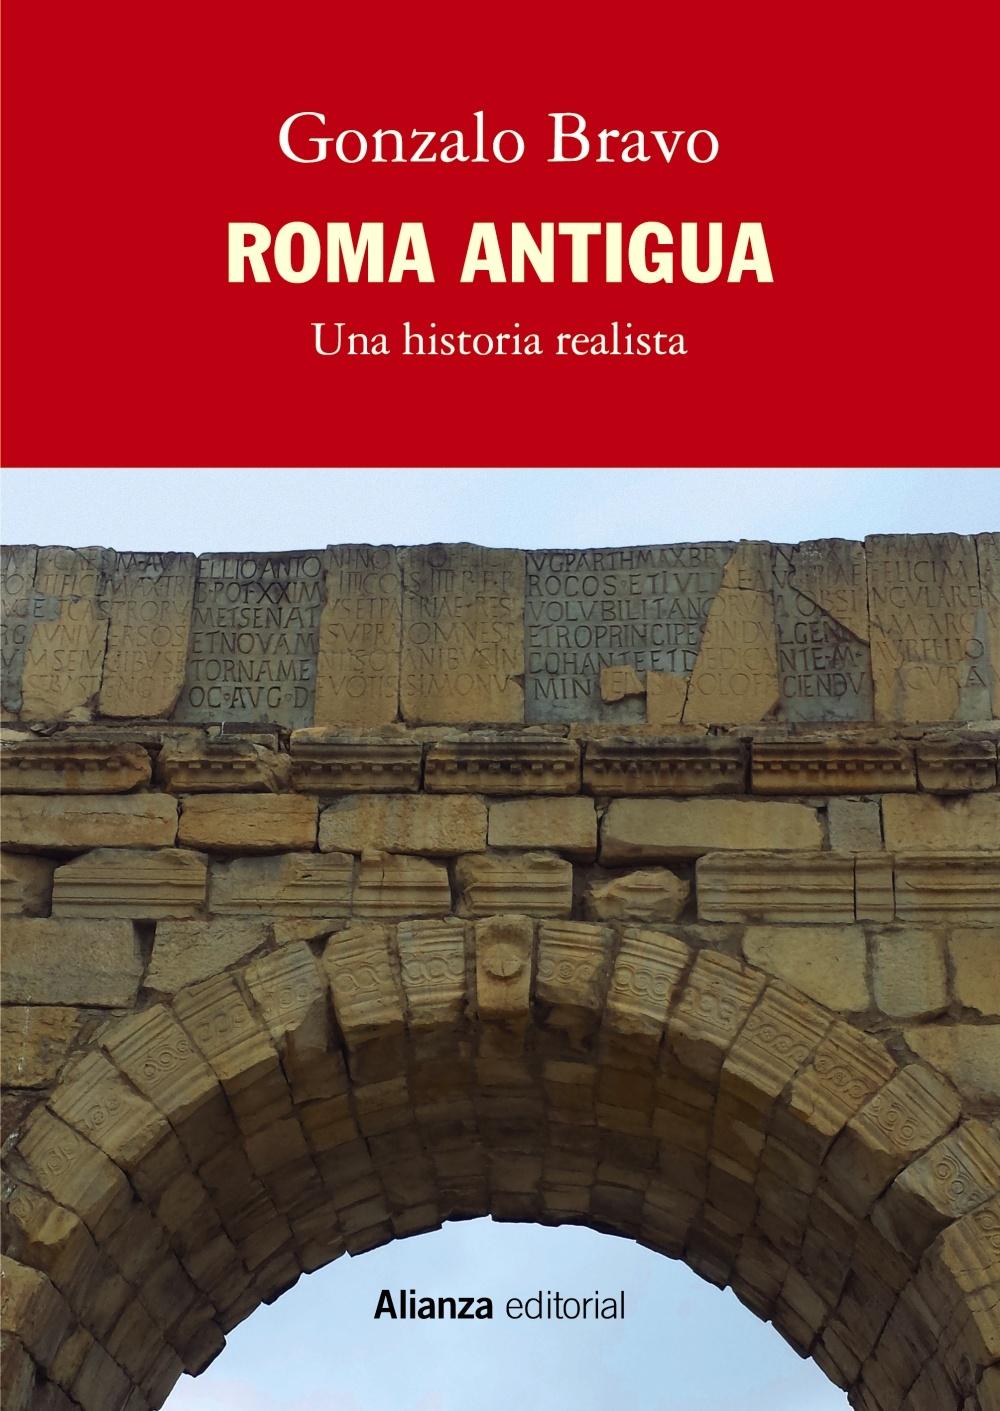 Roma Antigua "Una historia realista"